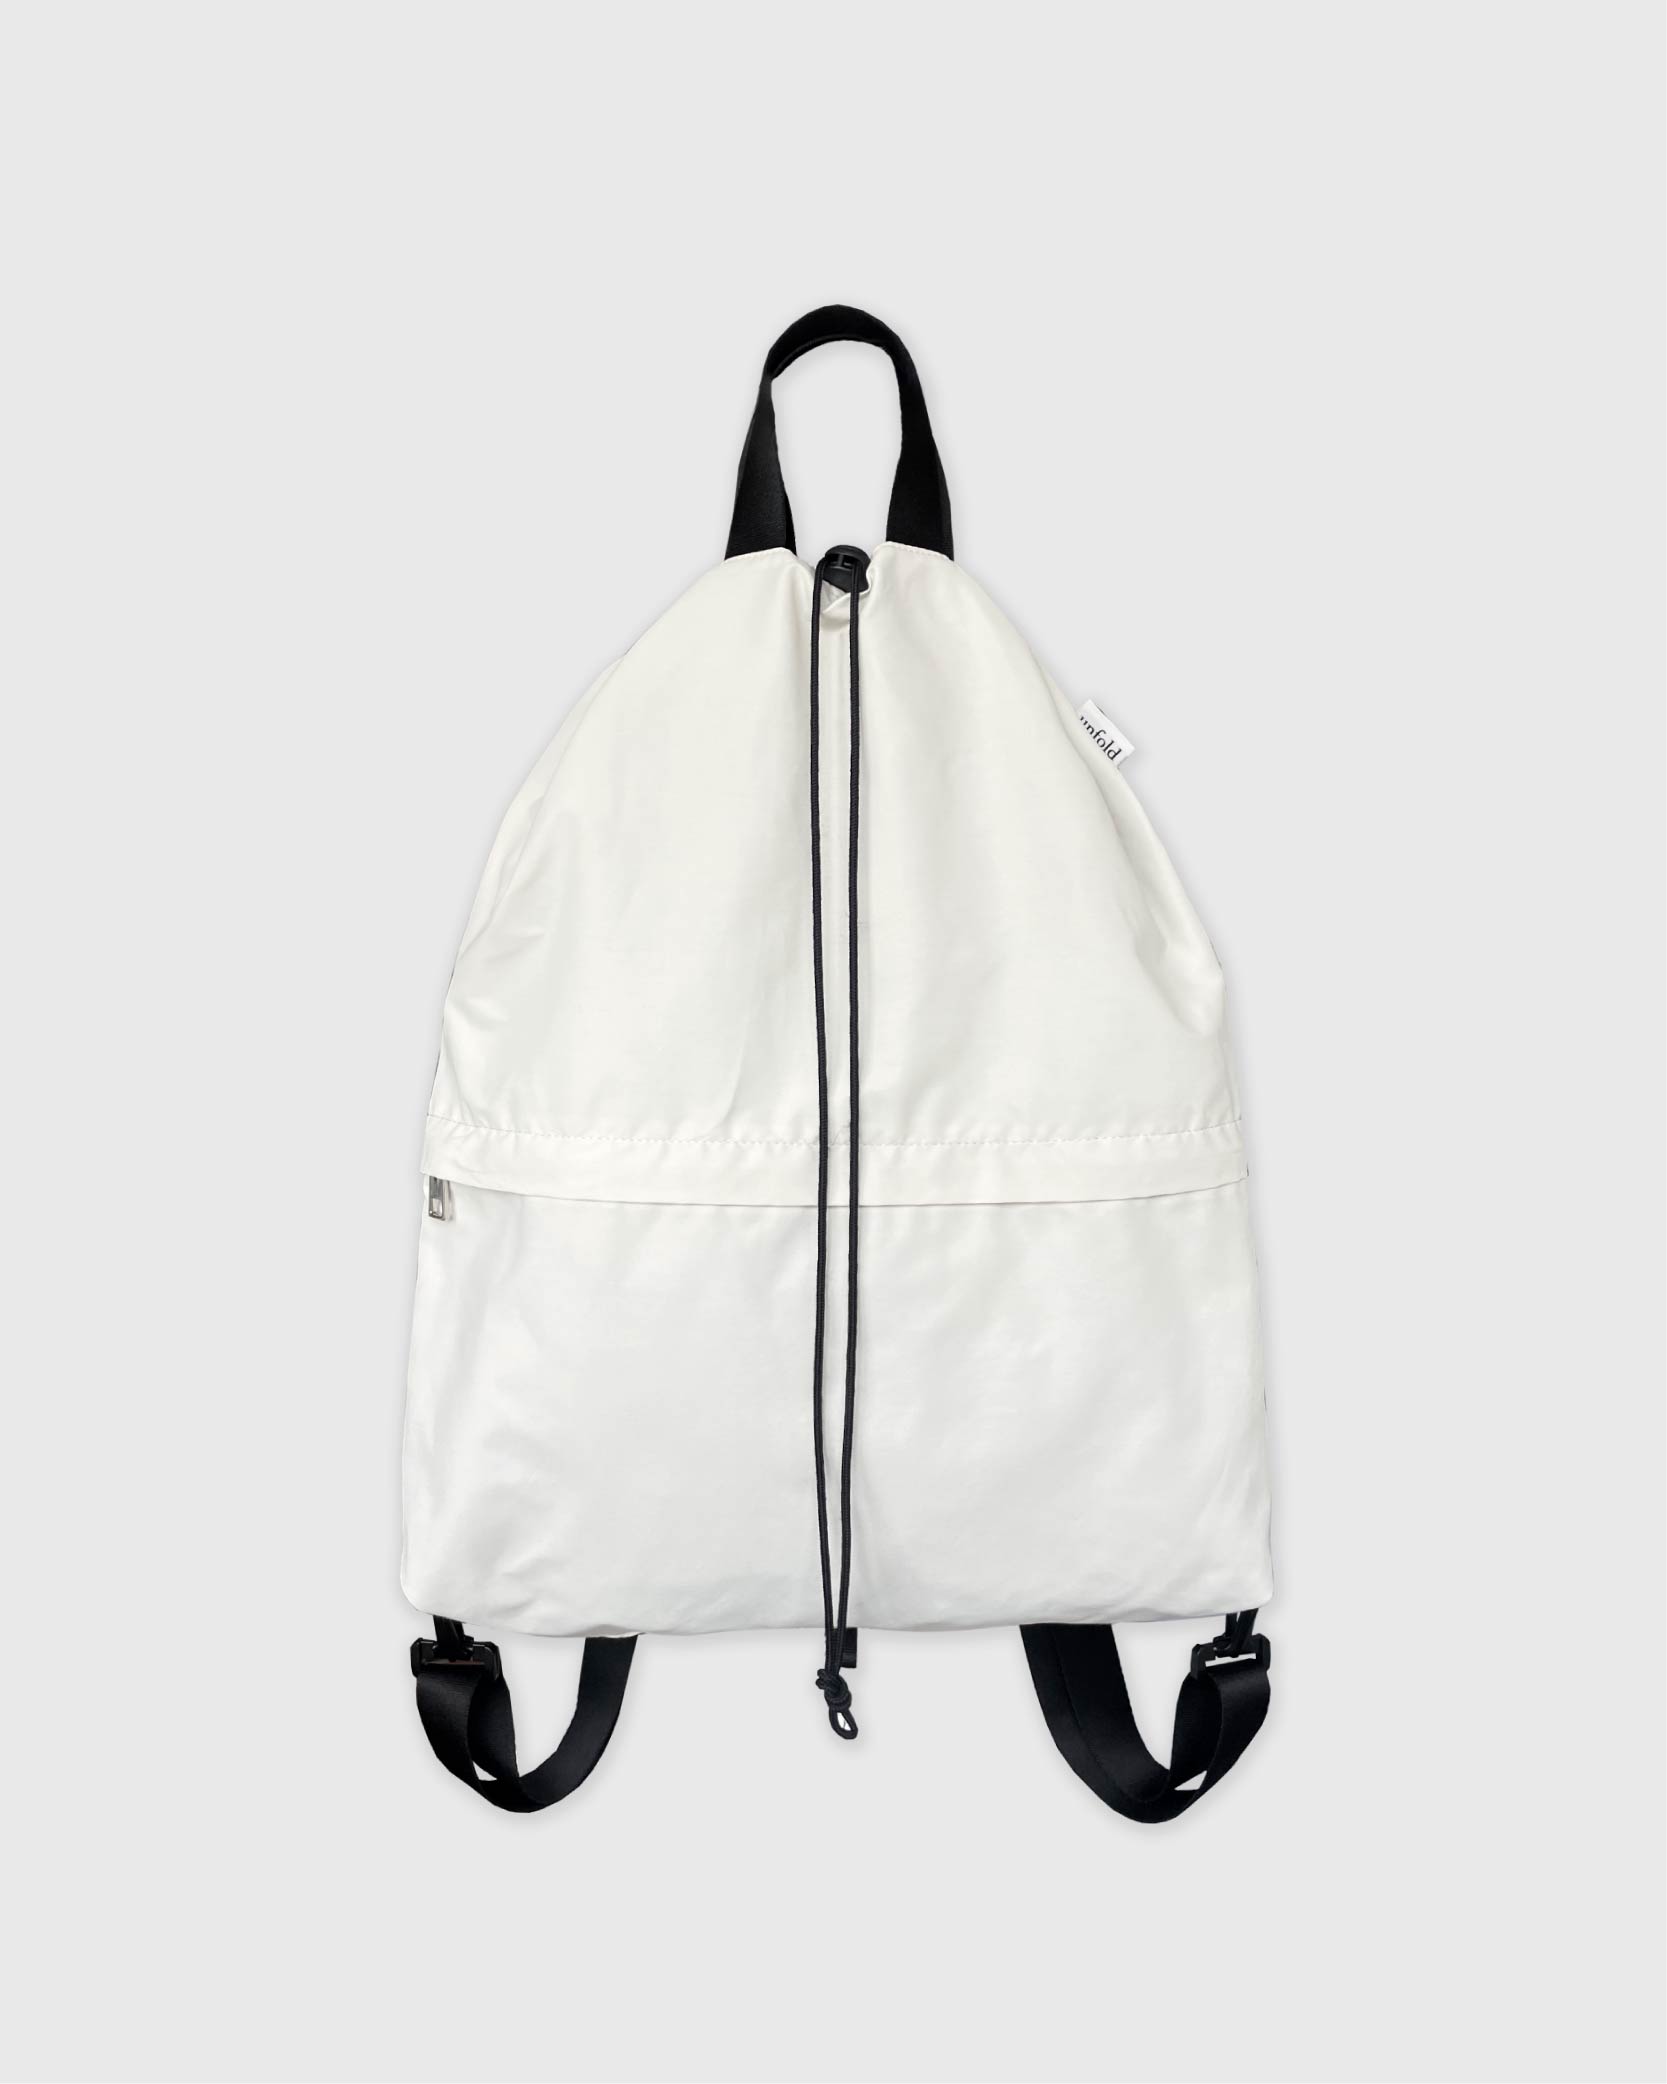 언폴드,unfold,에코백,파우치,천가방,친환경가방,[예약 배송 6/16] String backpack (Ivory)